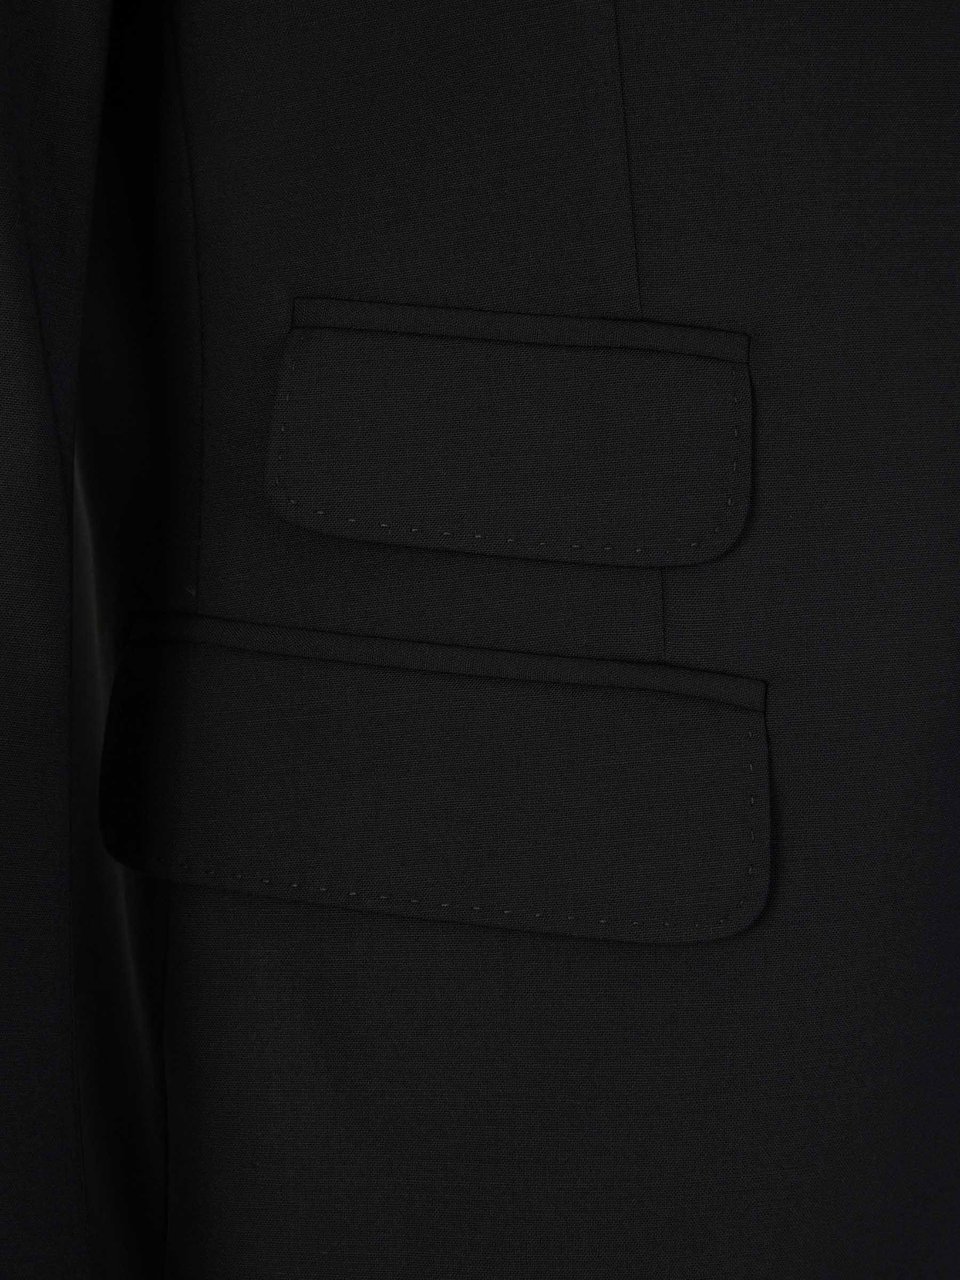 Dsquared2 Plain Wool Suit Zwart